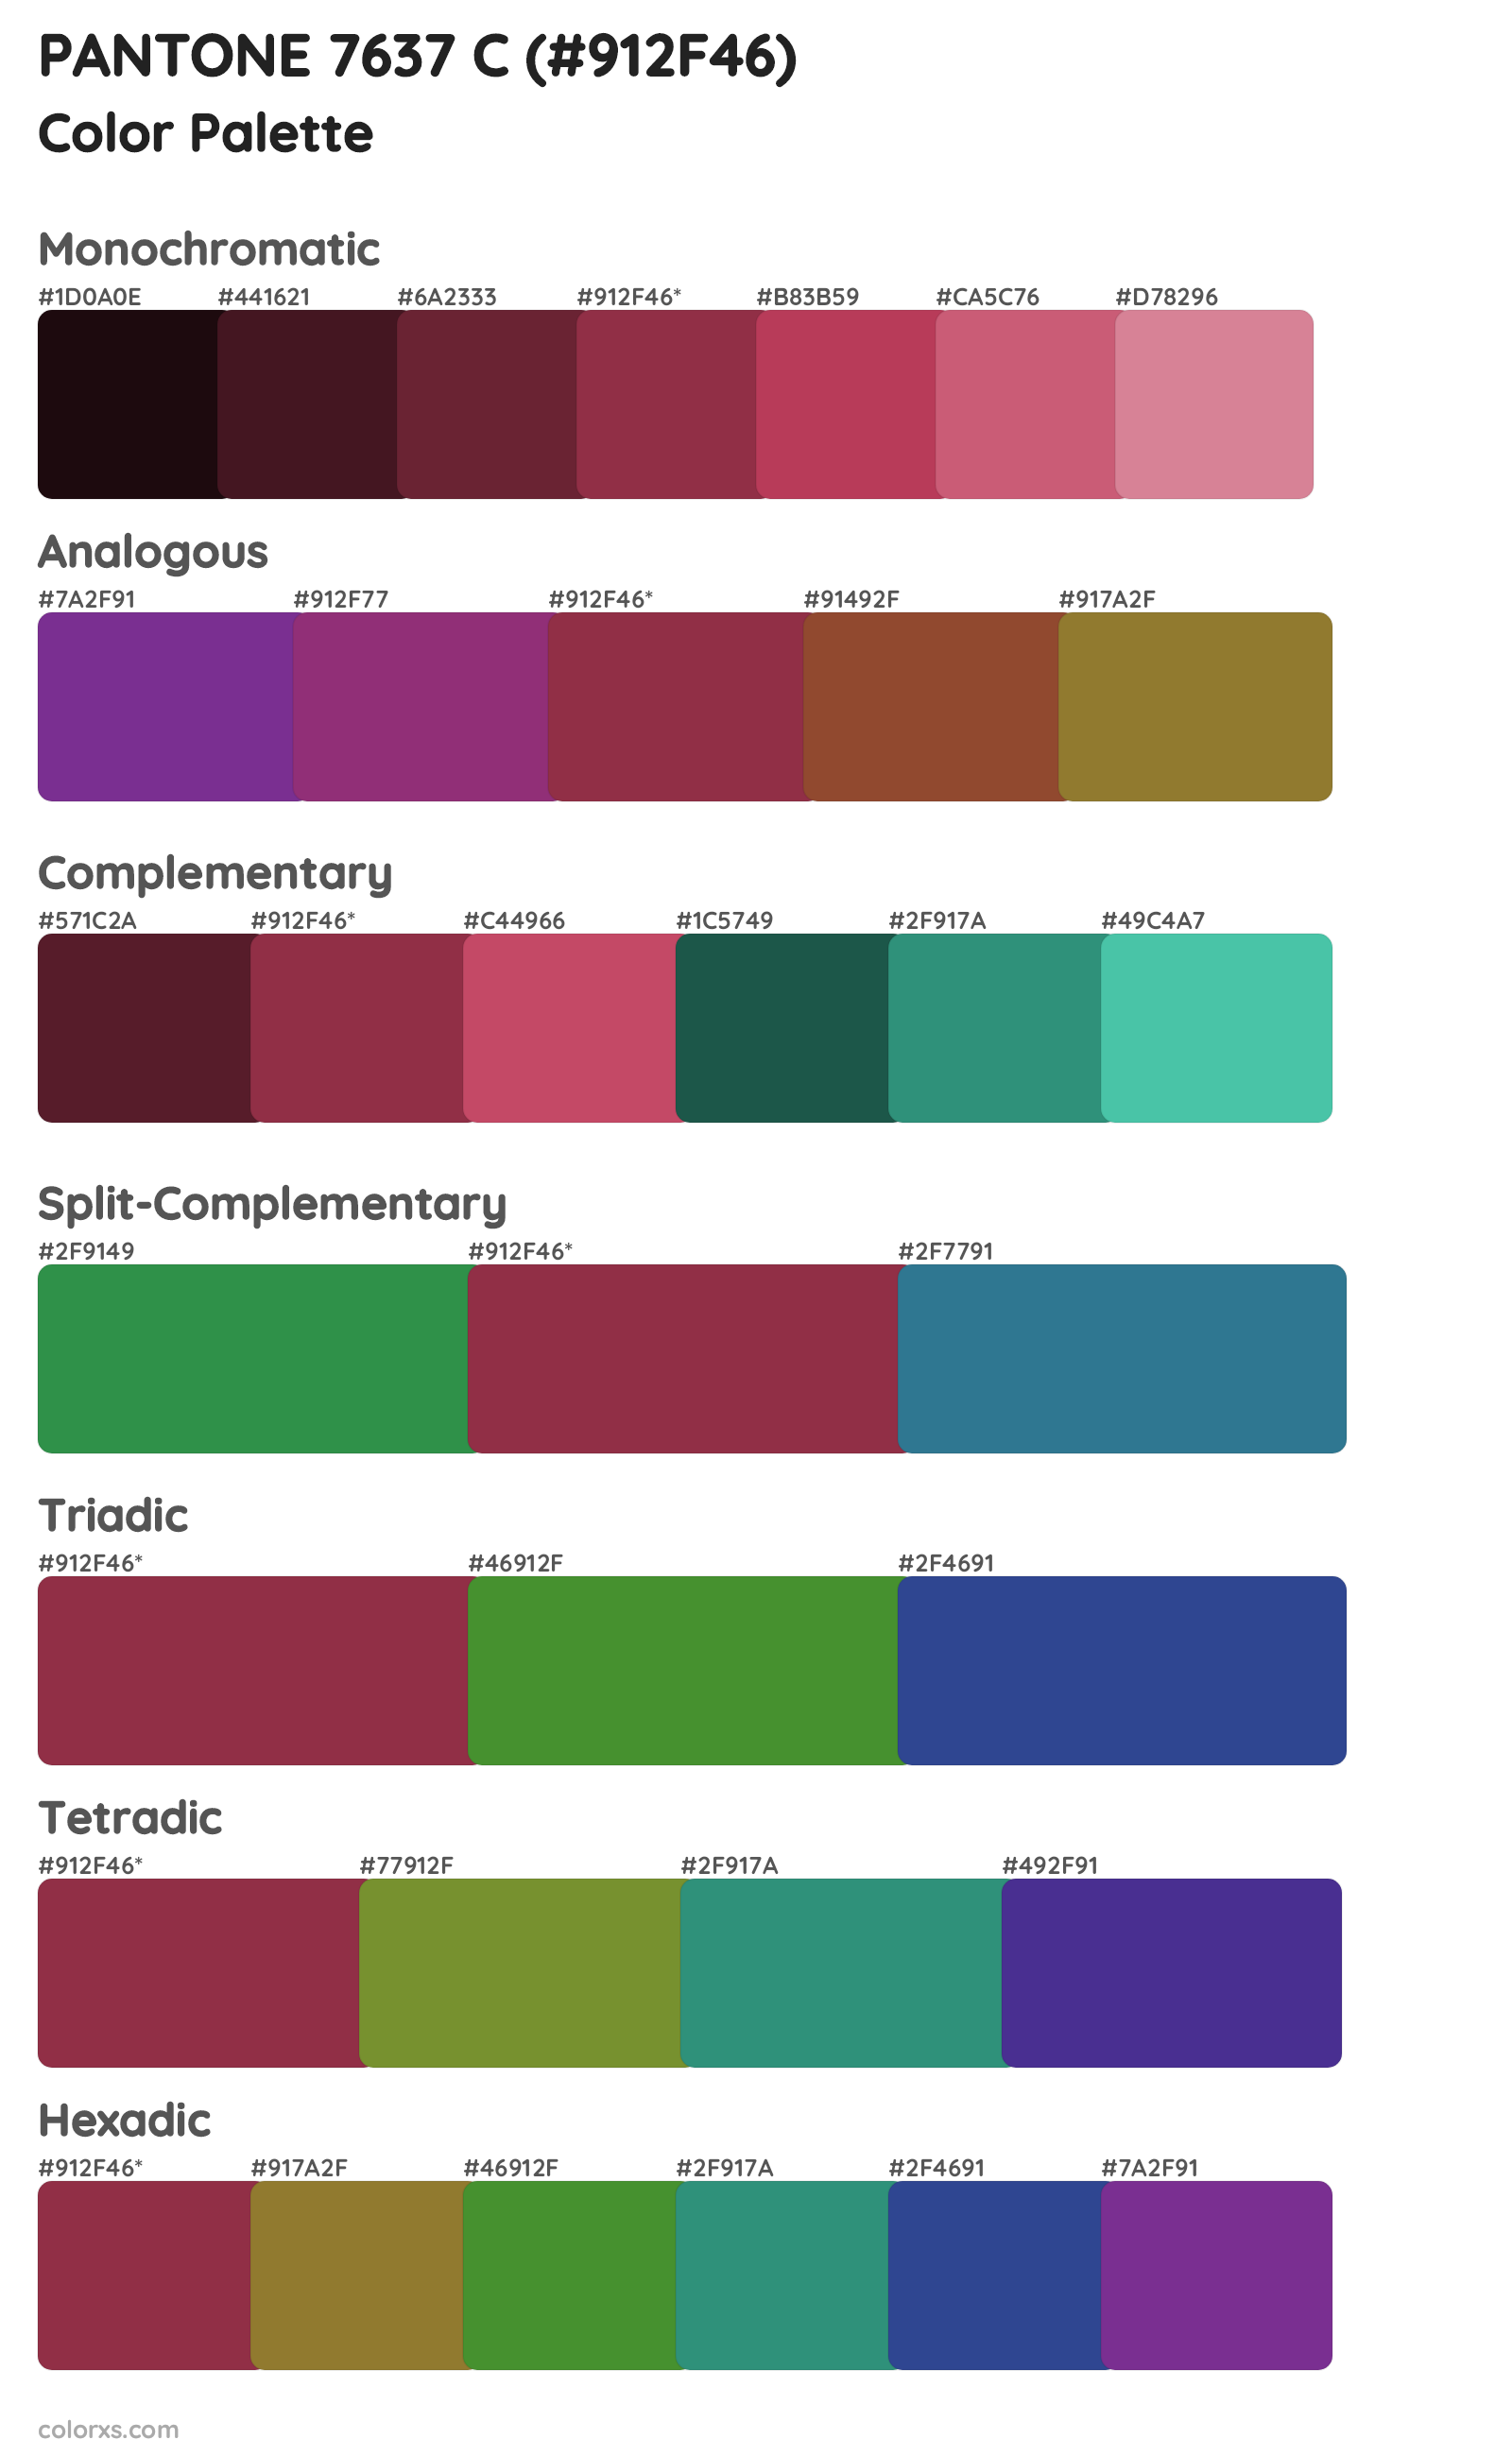 PANTONE 7637 C Color Scheme Palettes